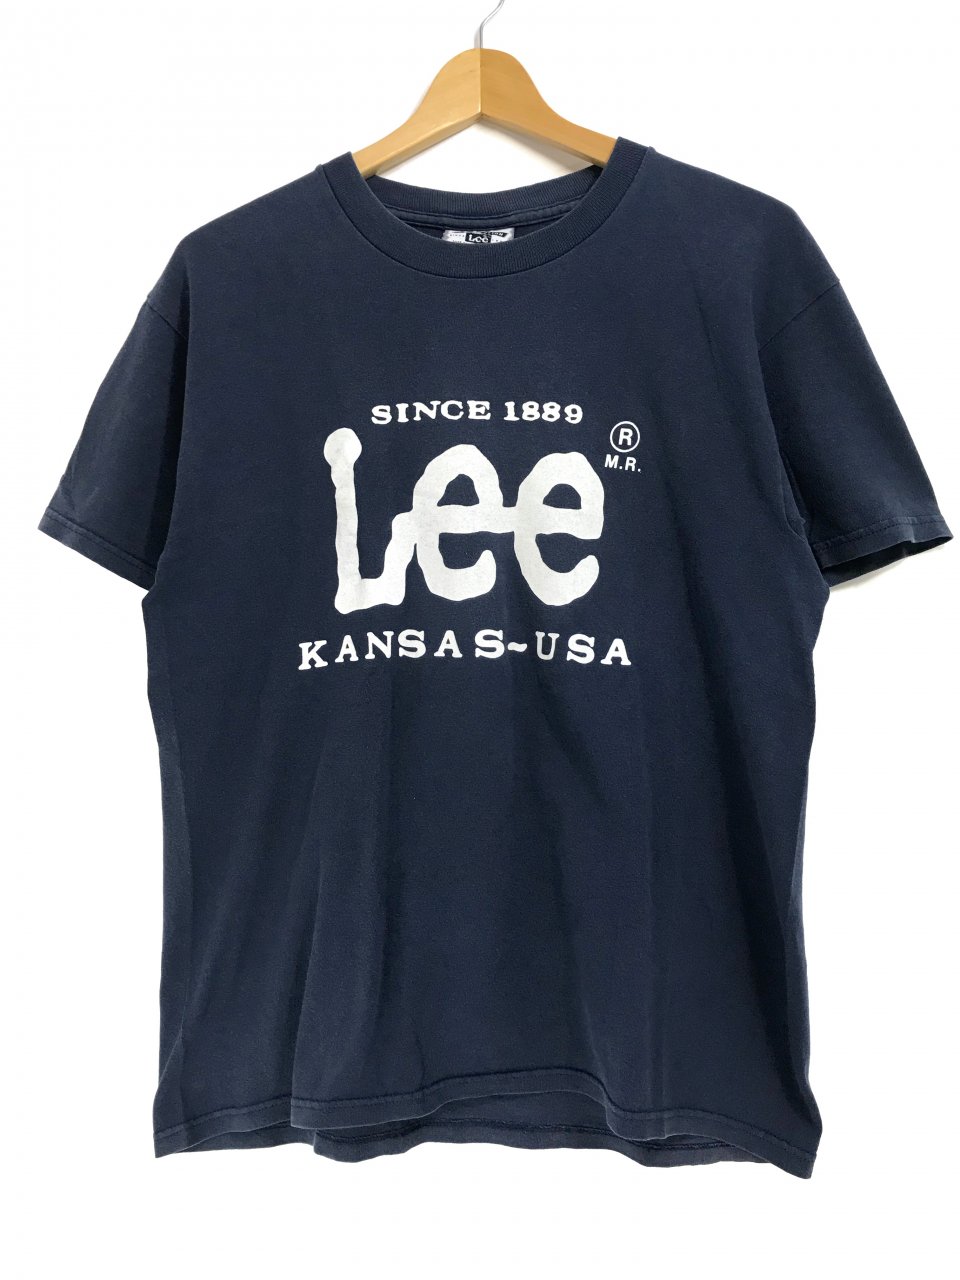 USA製 90s Lee Logo S/S Tee 紺 M リー ロゴ 半袖 Tシャツ ロゴT デカロゴ - NEWJOKE ONLINE STORE